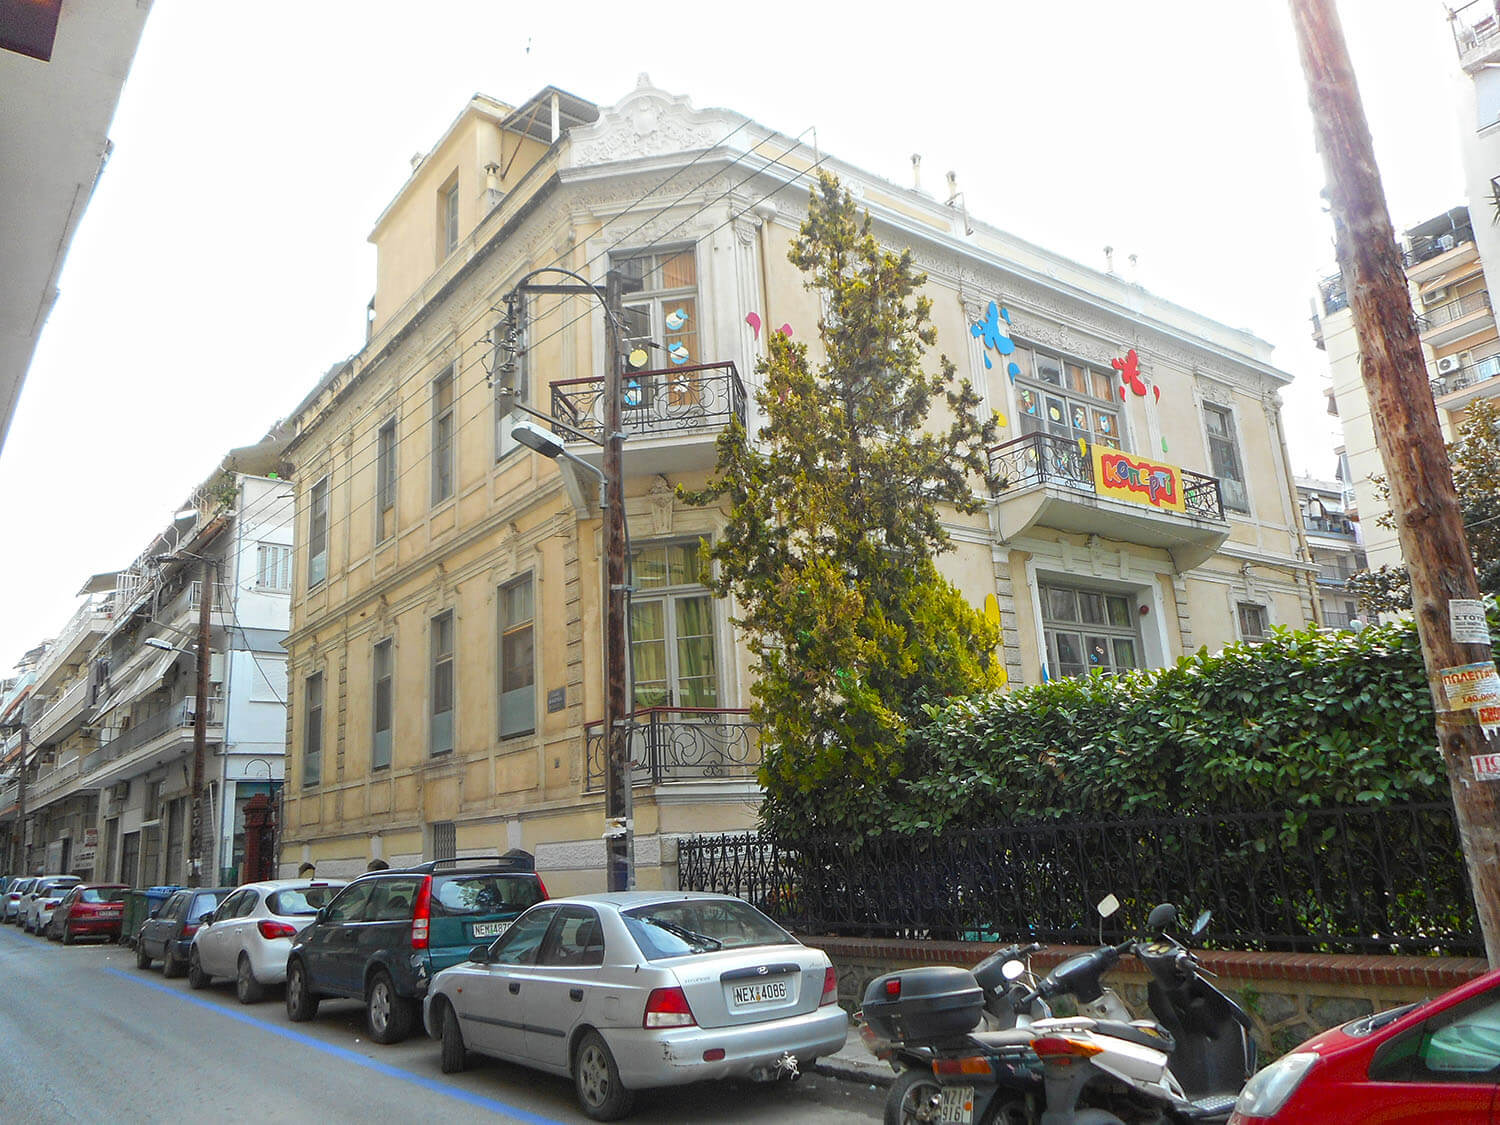 Αποκατάσταση - συντήρηση διατηρητέου κτιρίου στη Θεσσαλονίκη από τον Χρήστο Αυγερινό.